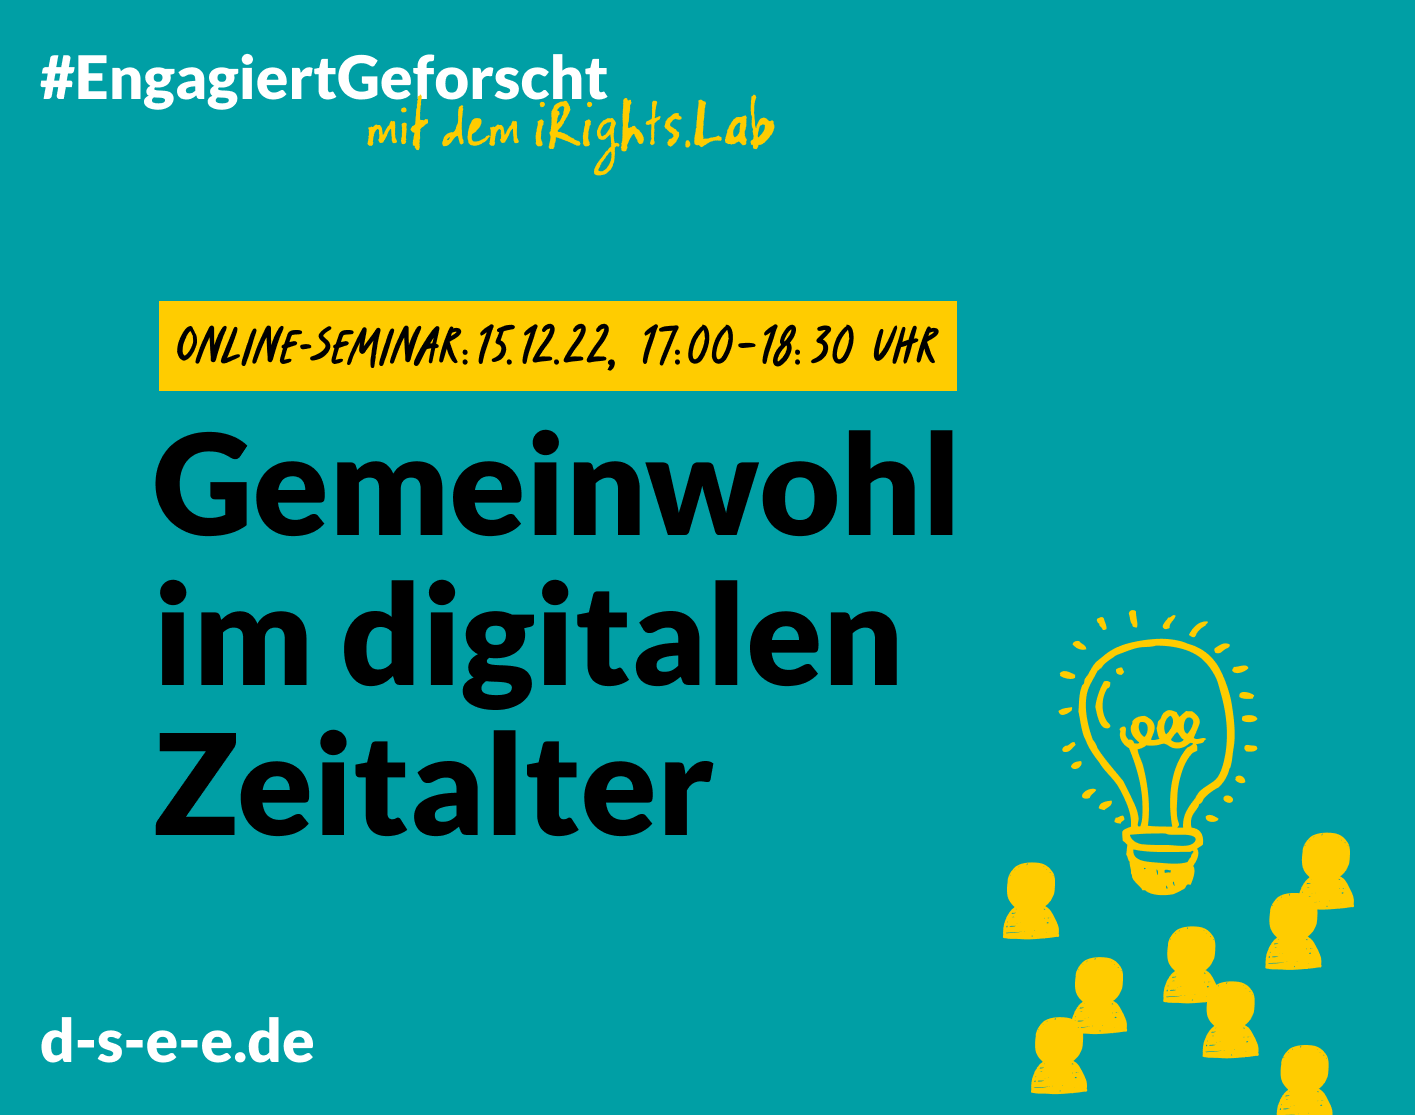 Grafik mit dem Text: Engagiert Geforscht mit dem irights.Lab. Online Seminar: 15.12.22, 17:00 Uhr. Gemeinwohl im digitalen Zeitlalter. d-s-e-e.de